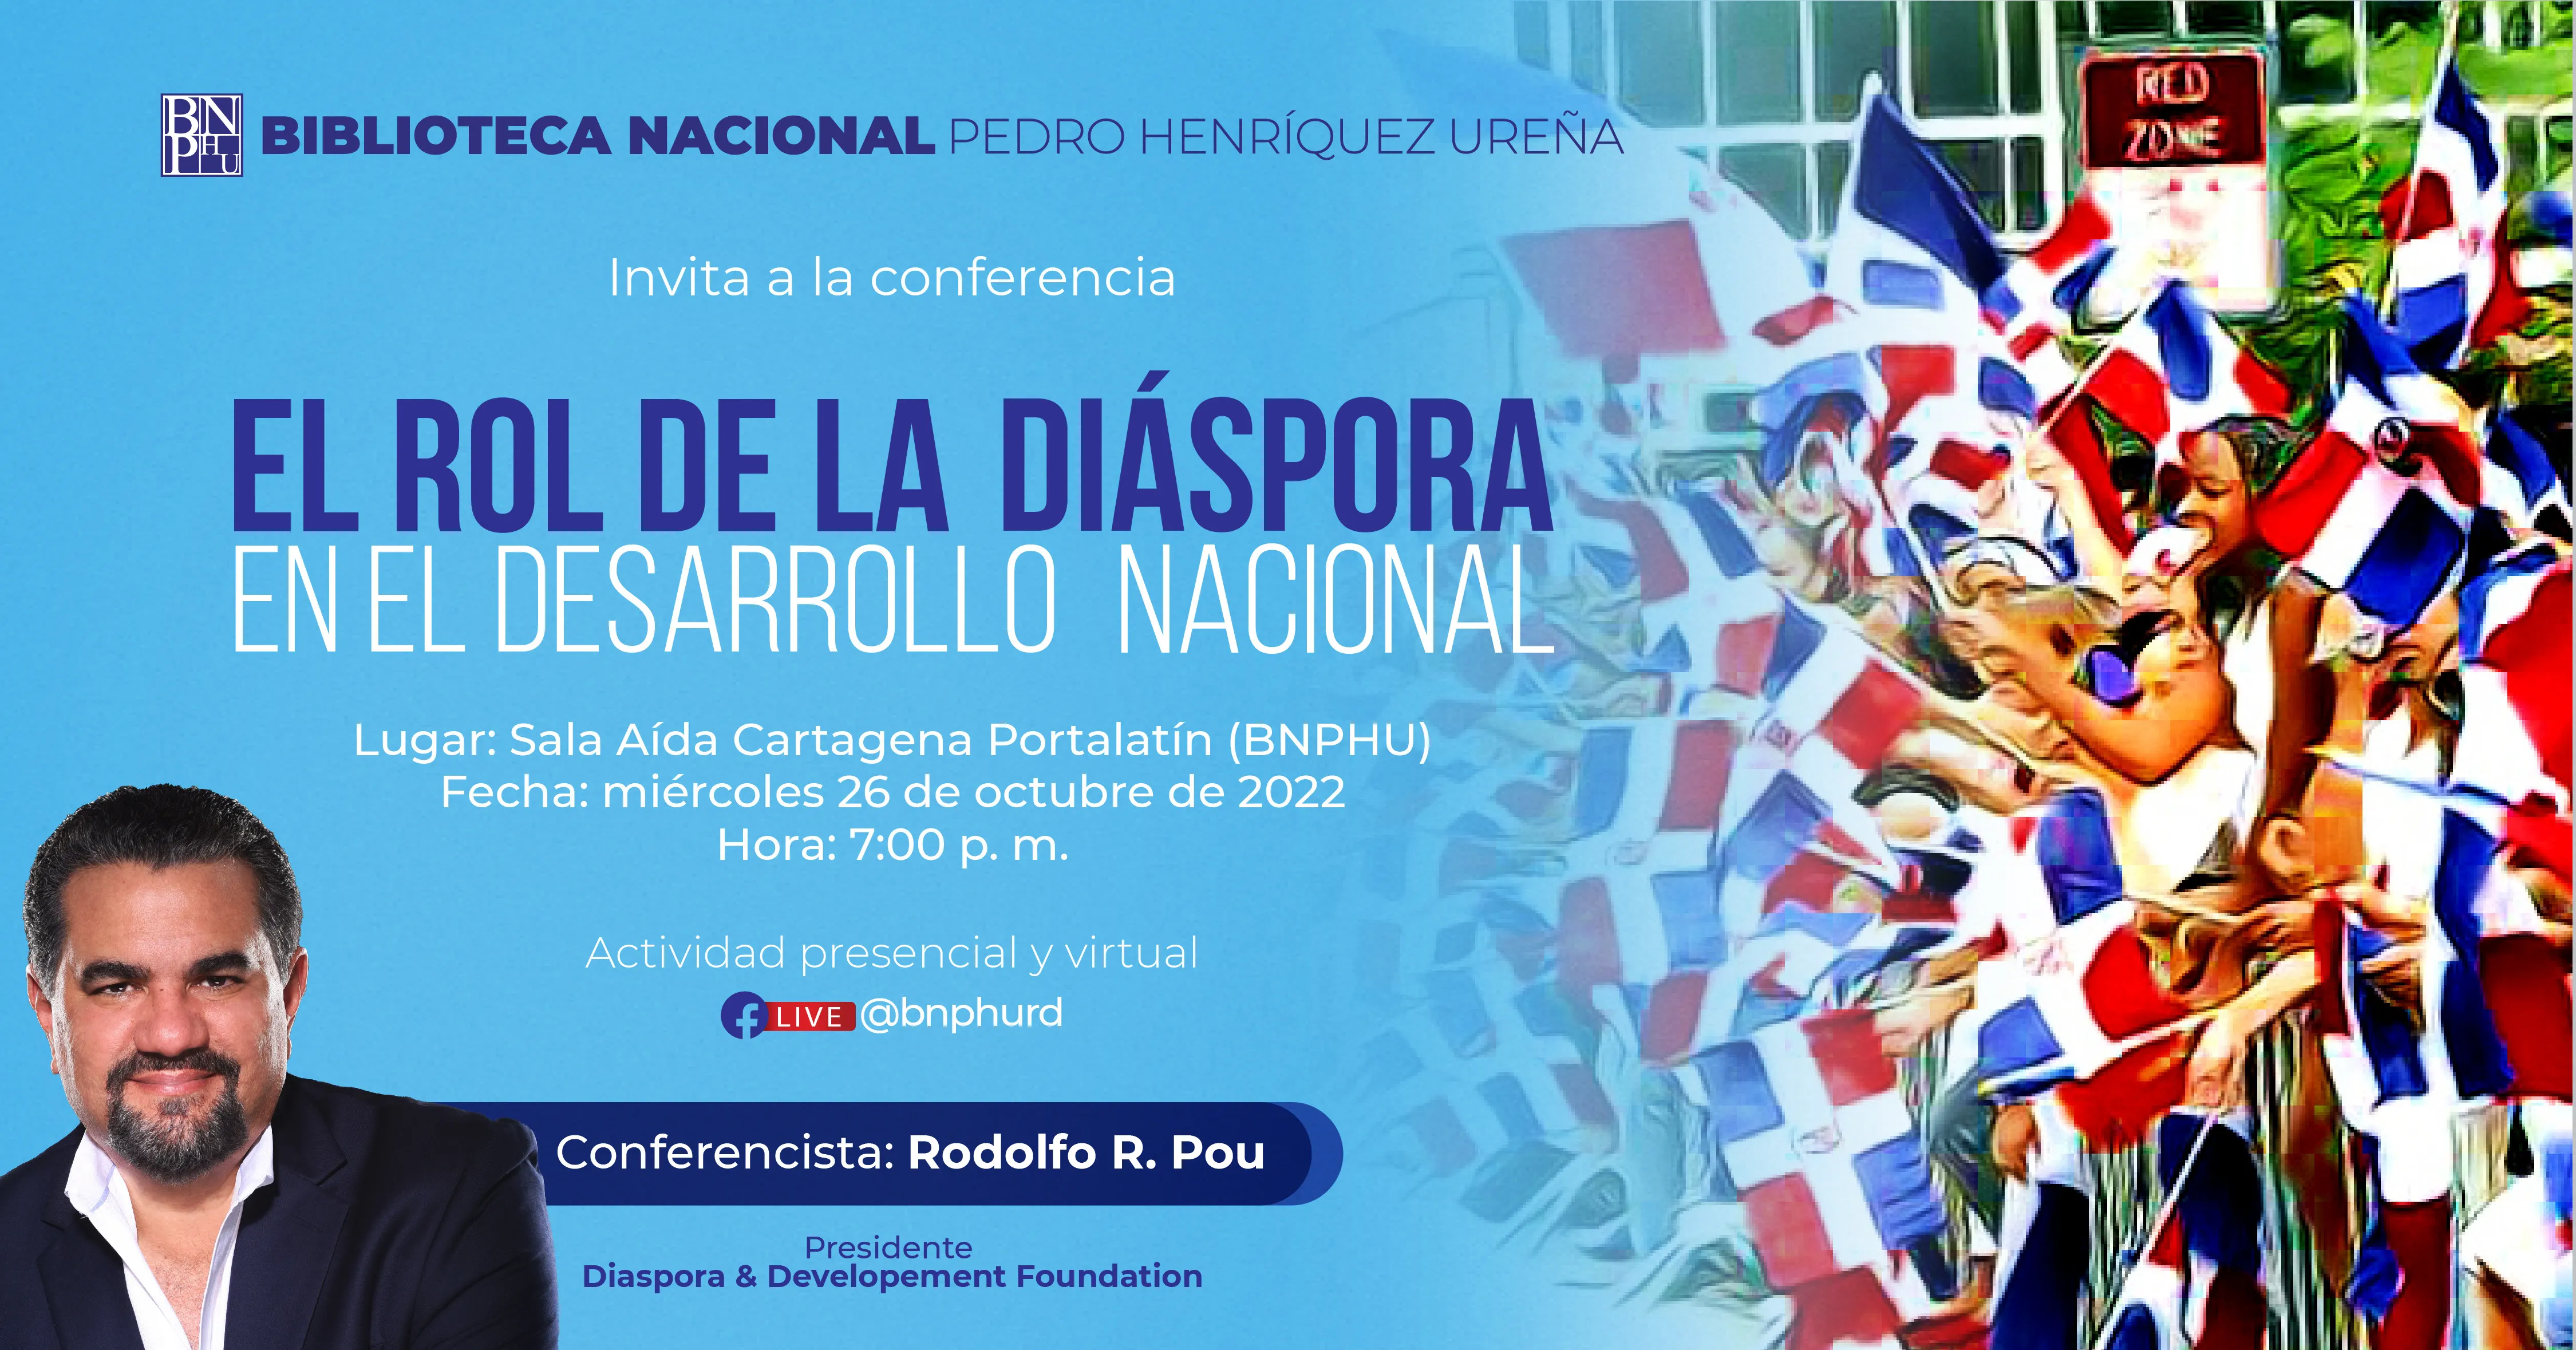 Dictarán conferencia sobre el rol de la diáspora en el desarrollo nacional en la Biblioteca Nacional